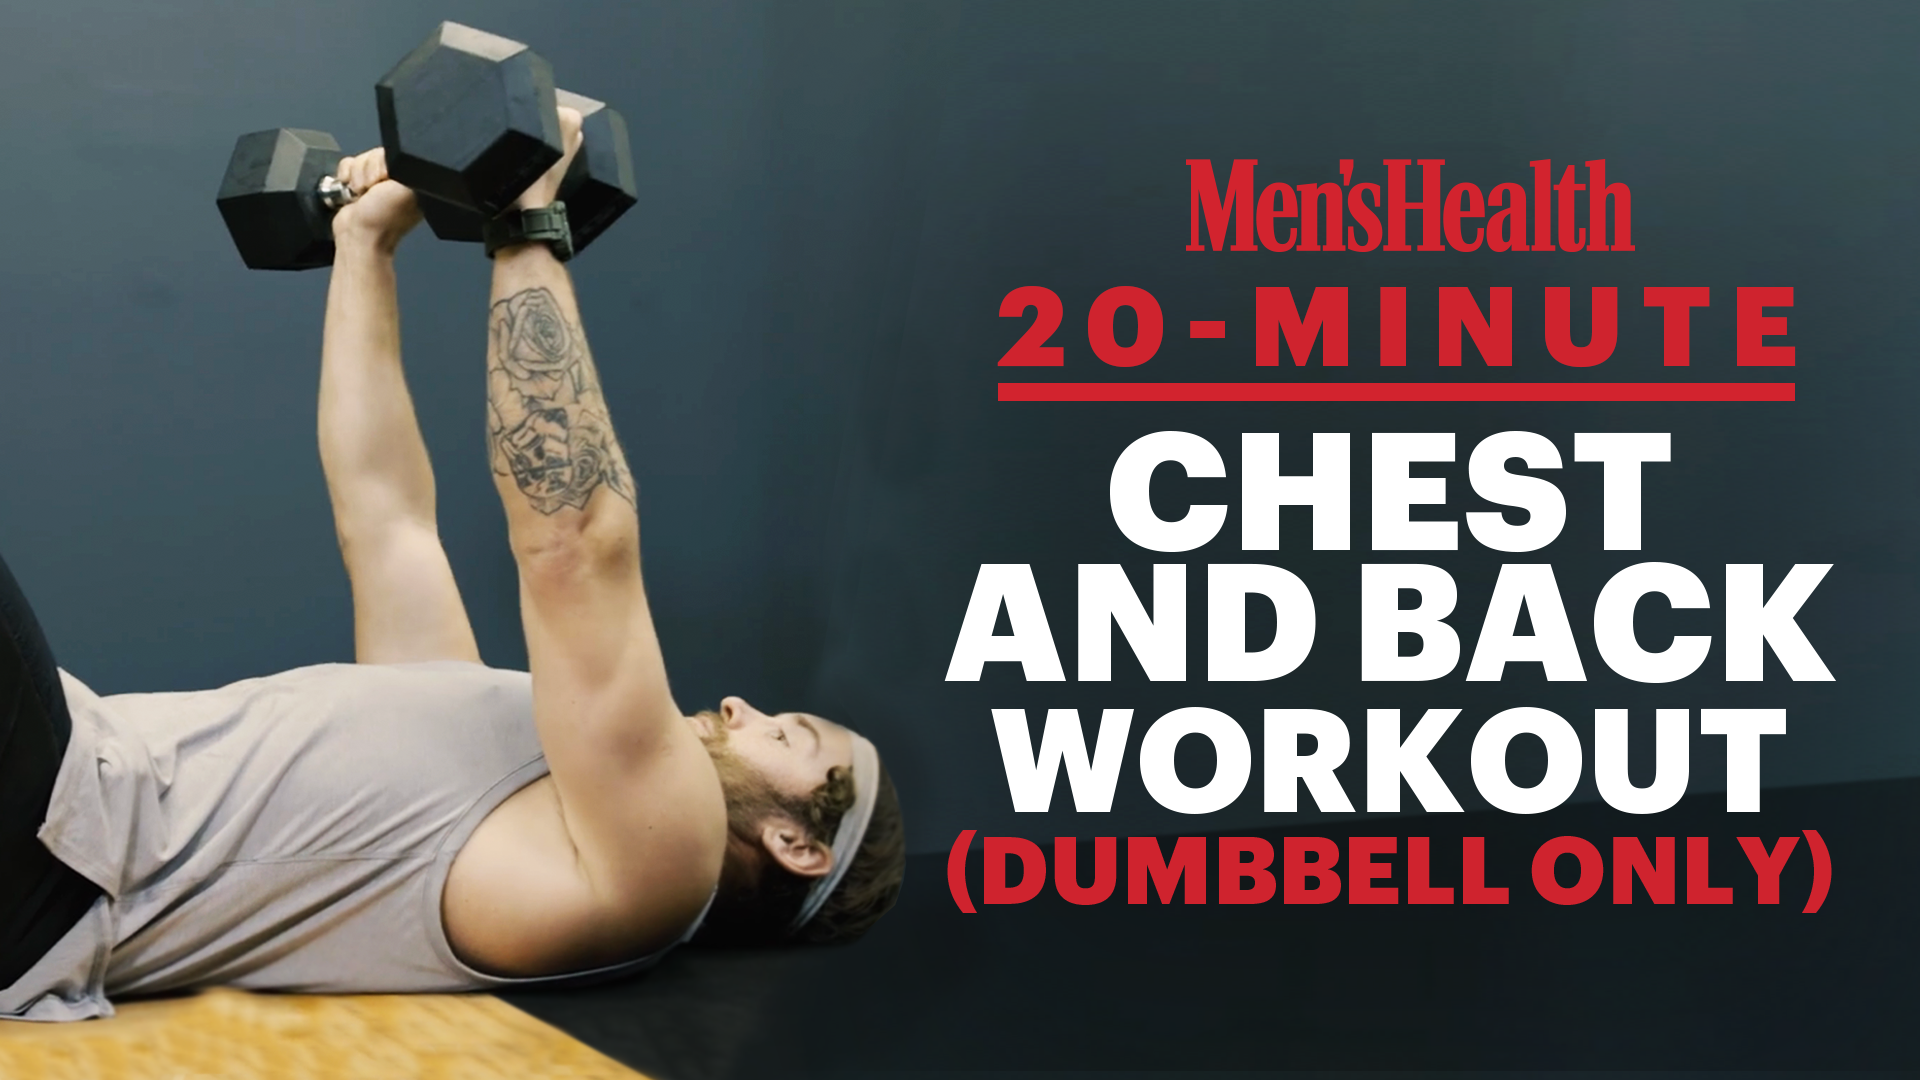 dumbbell lower back exercises